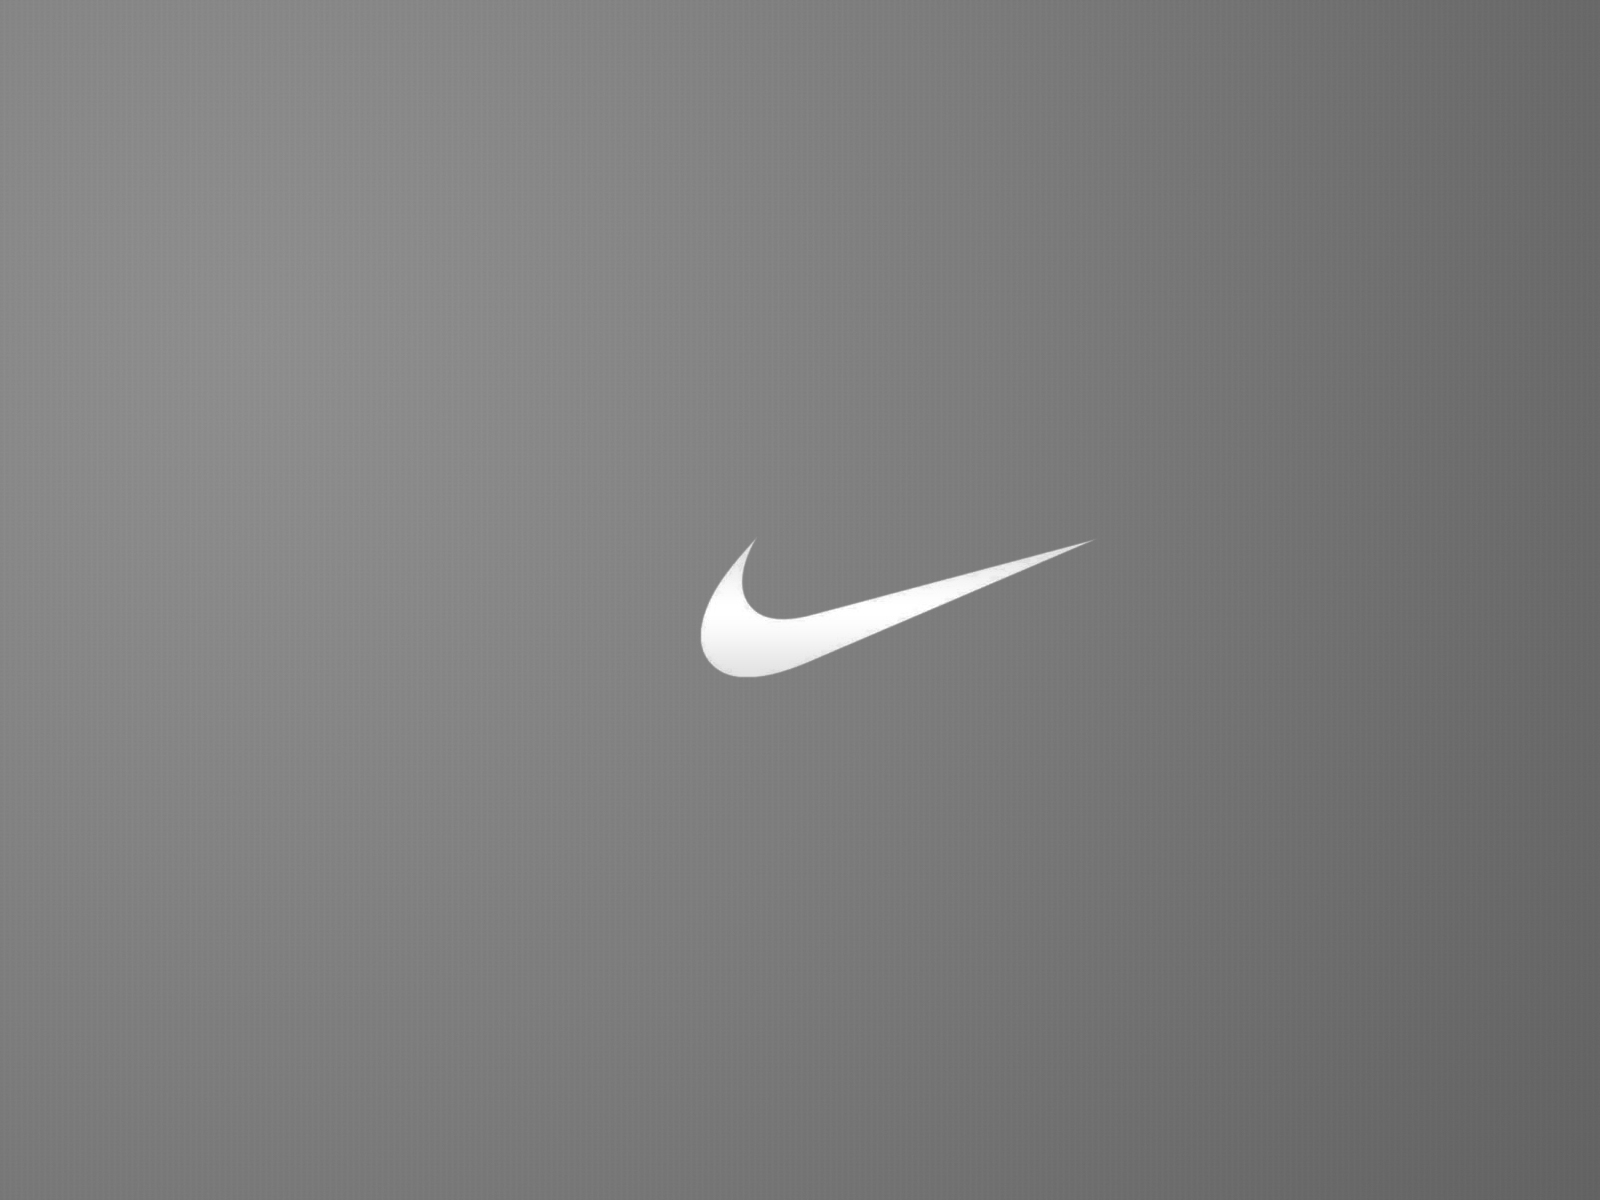 Nike Brand Logo Minimal HD Wallpaper Image To